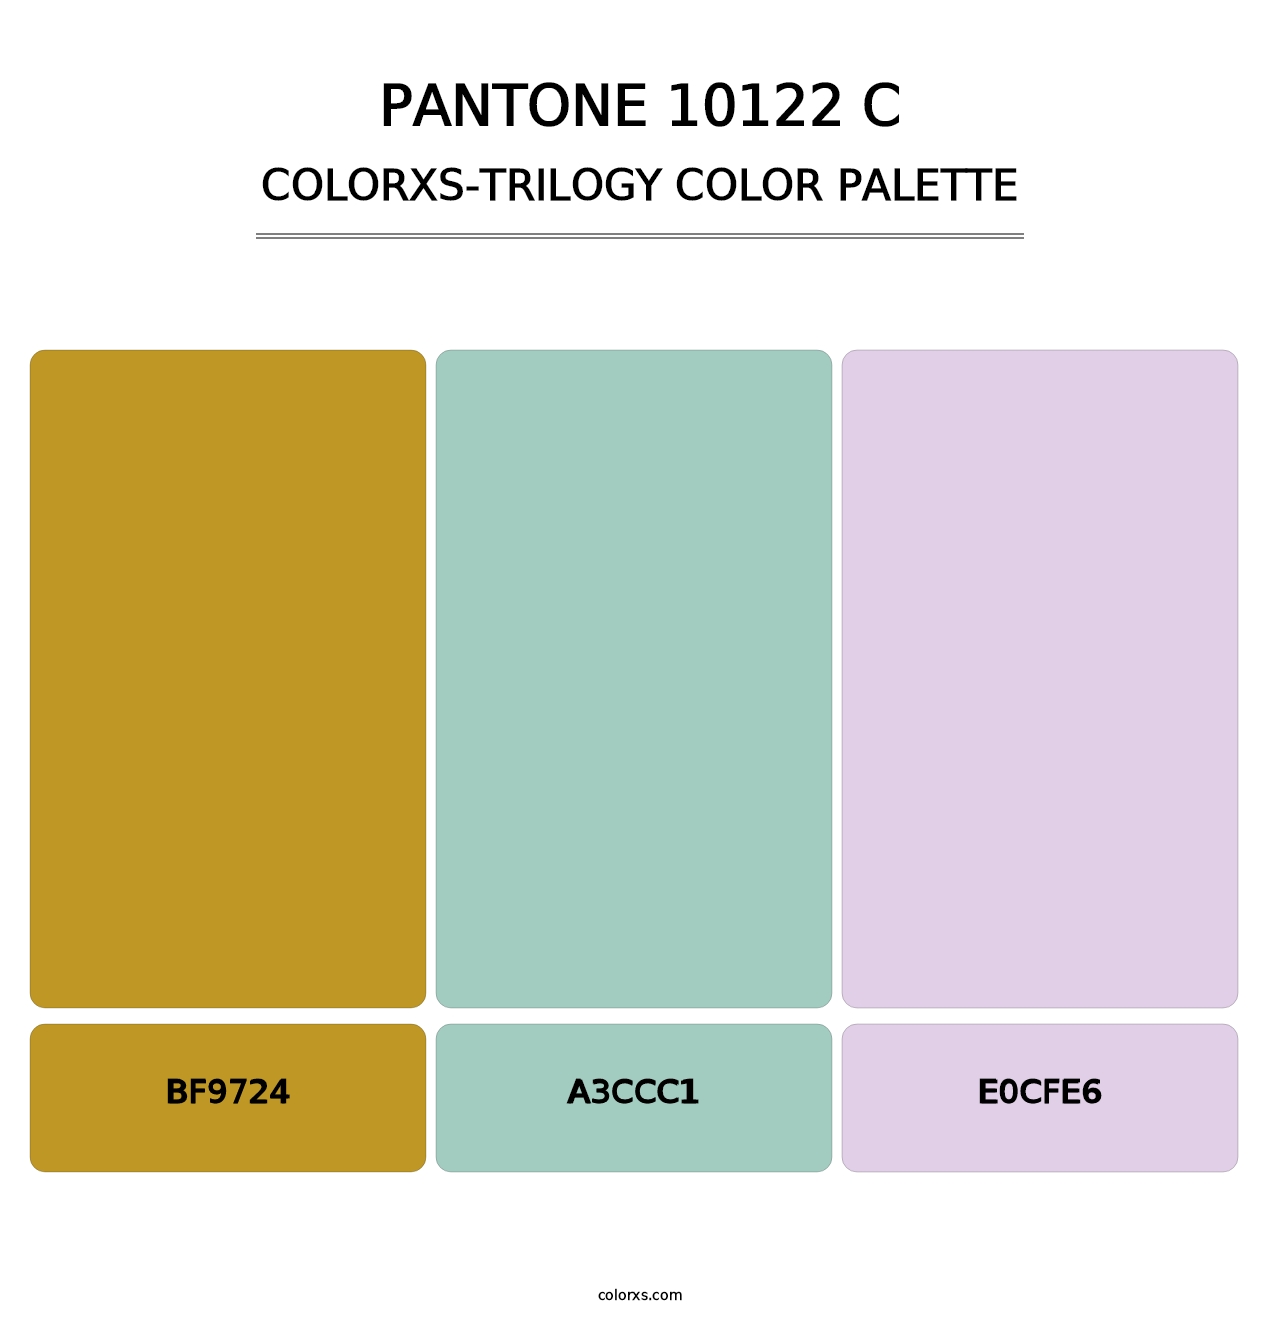 PANTONE 10122 C - Colorxs Trilogy Palette